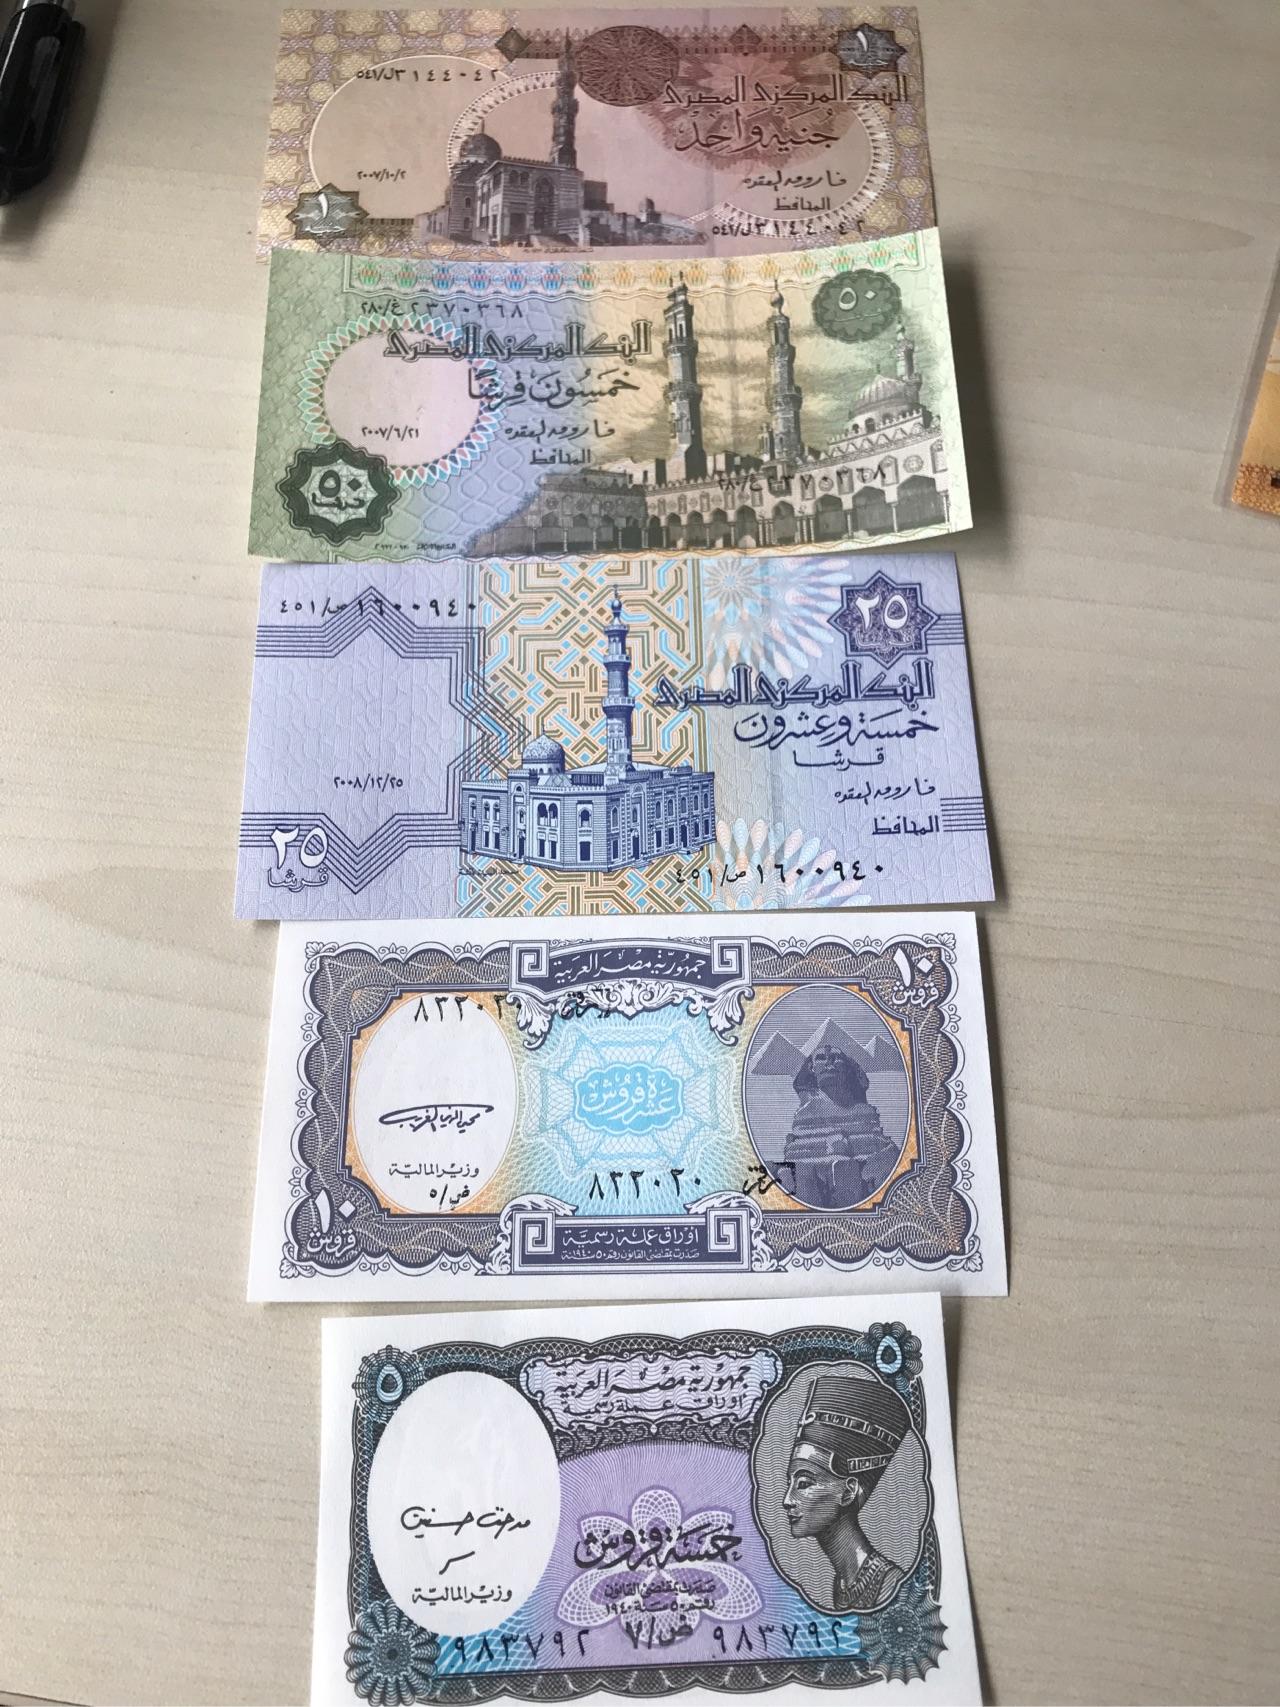 埃及镑50皮阿斯特和25皮阿斯特纸钞如何鉴别真假?是否为凹凸版印刷?